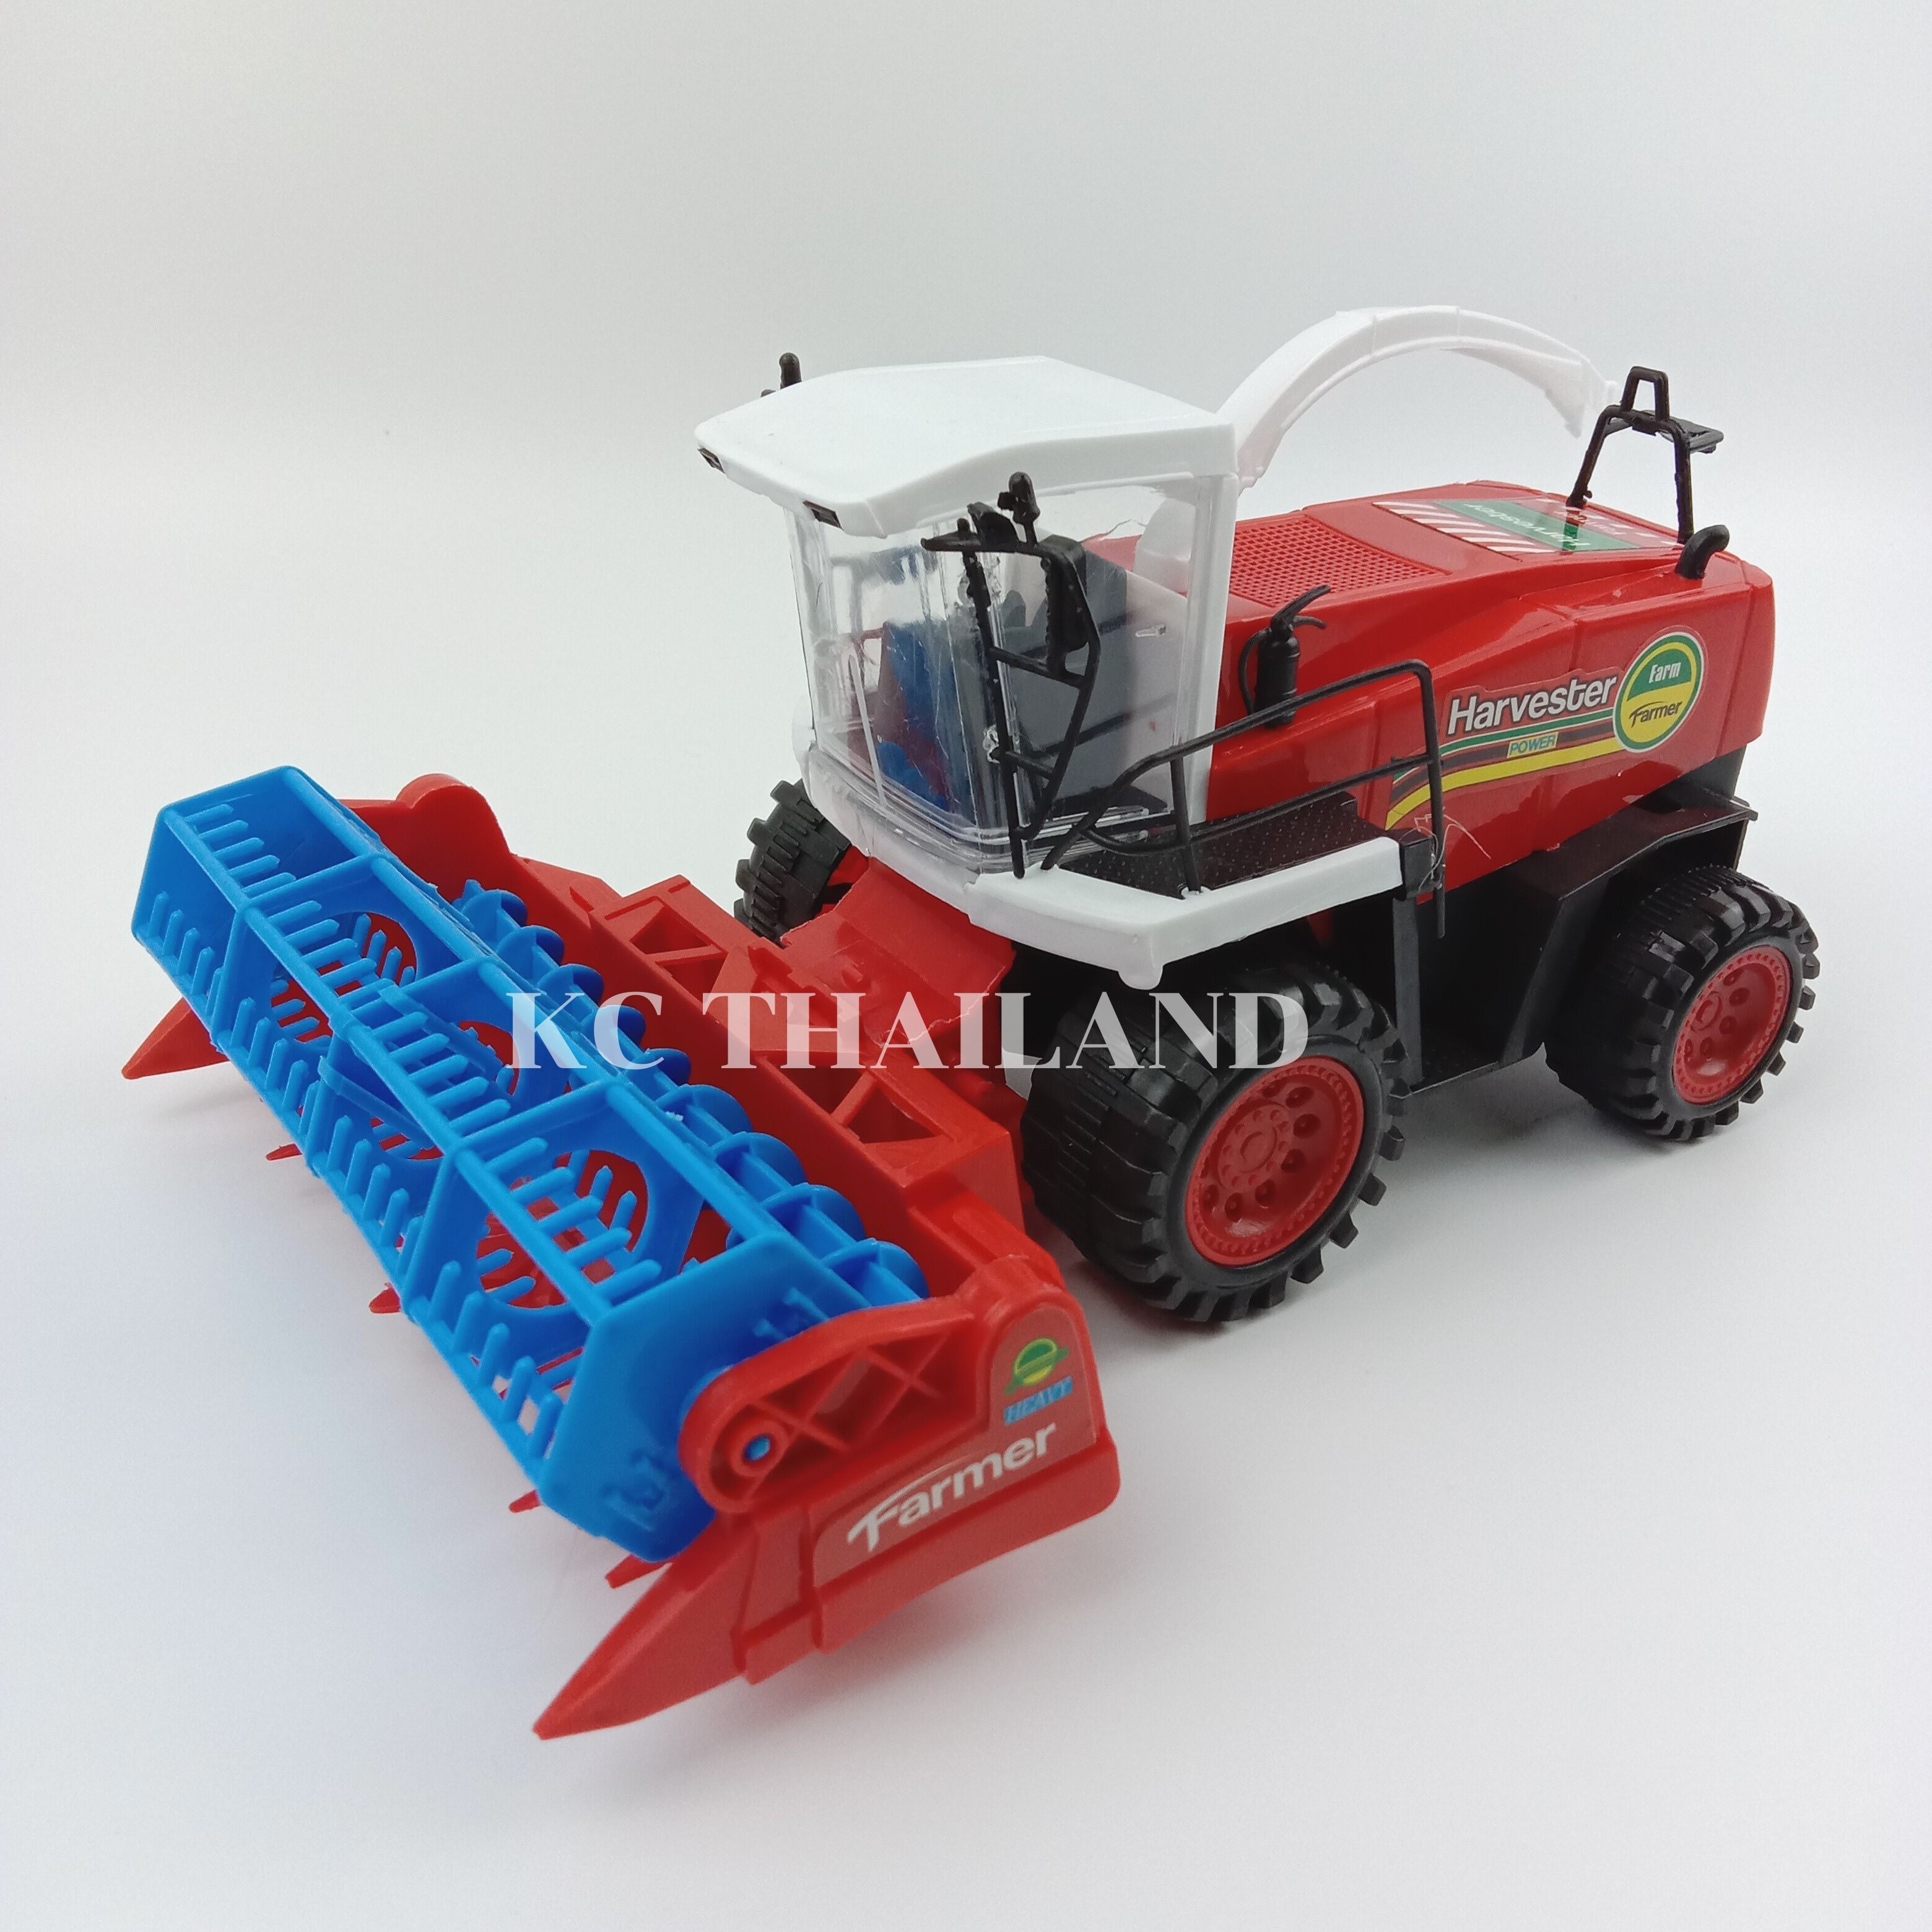 KC THAILAND ของเล่นเด็กรถเกี่ยวข้าวฝาครอบ สีแดง FARM SERIES FARM VEHICLE NO.0488-146